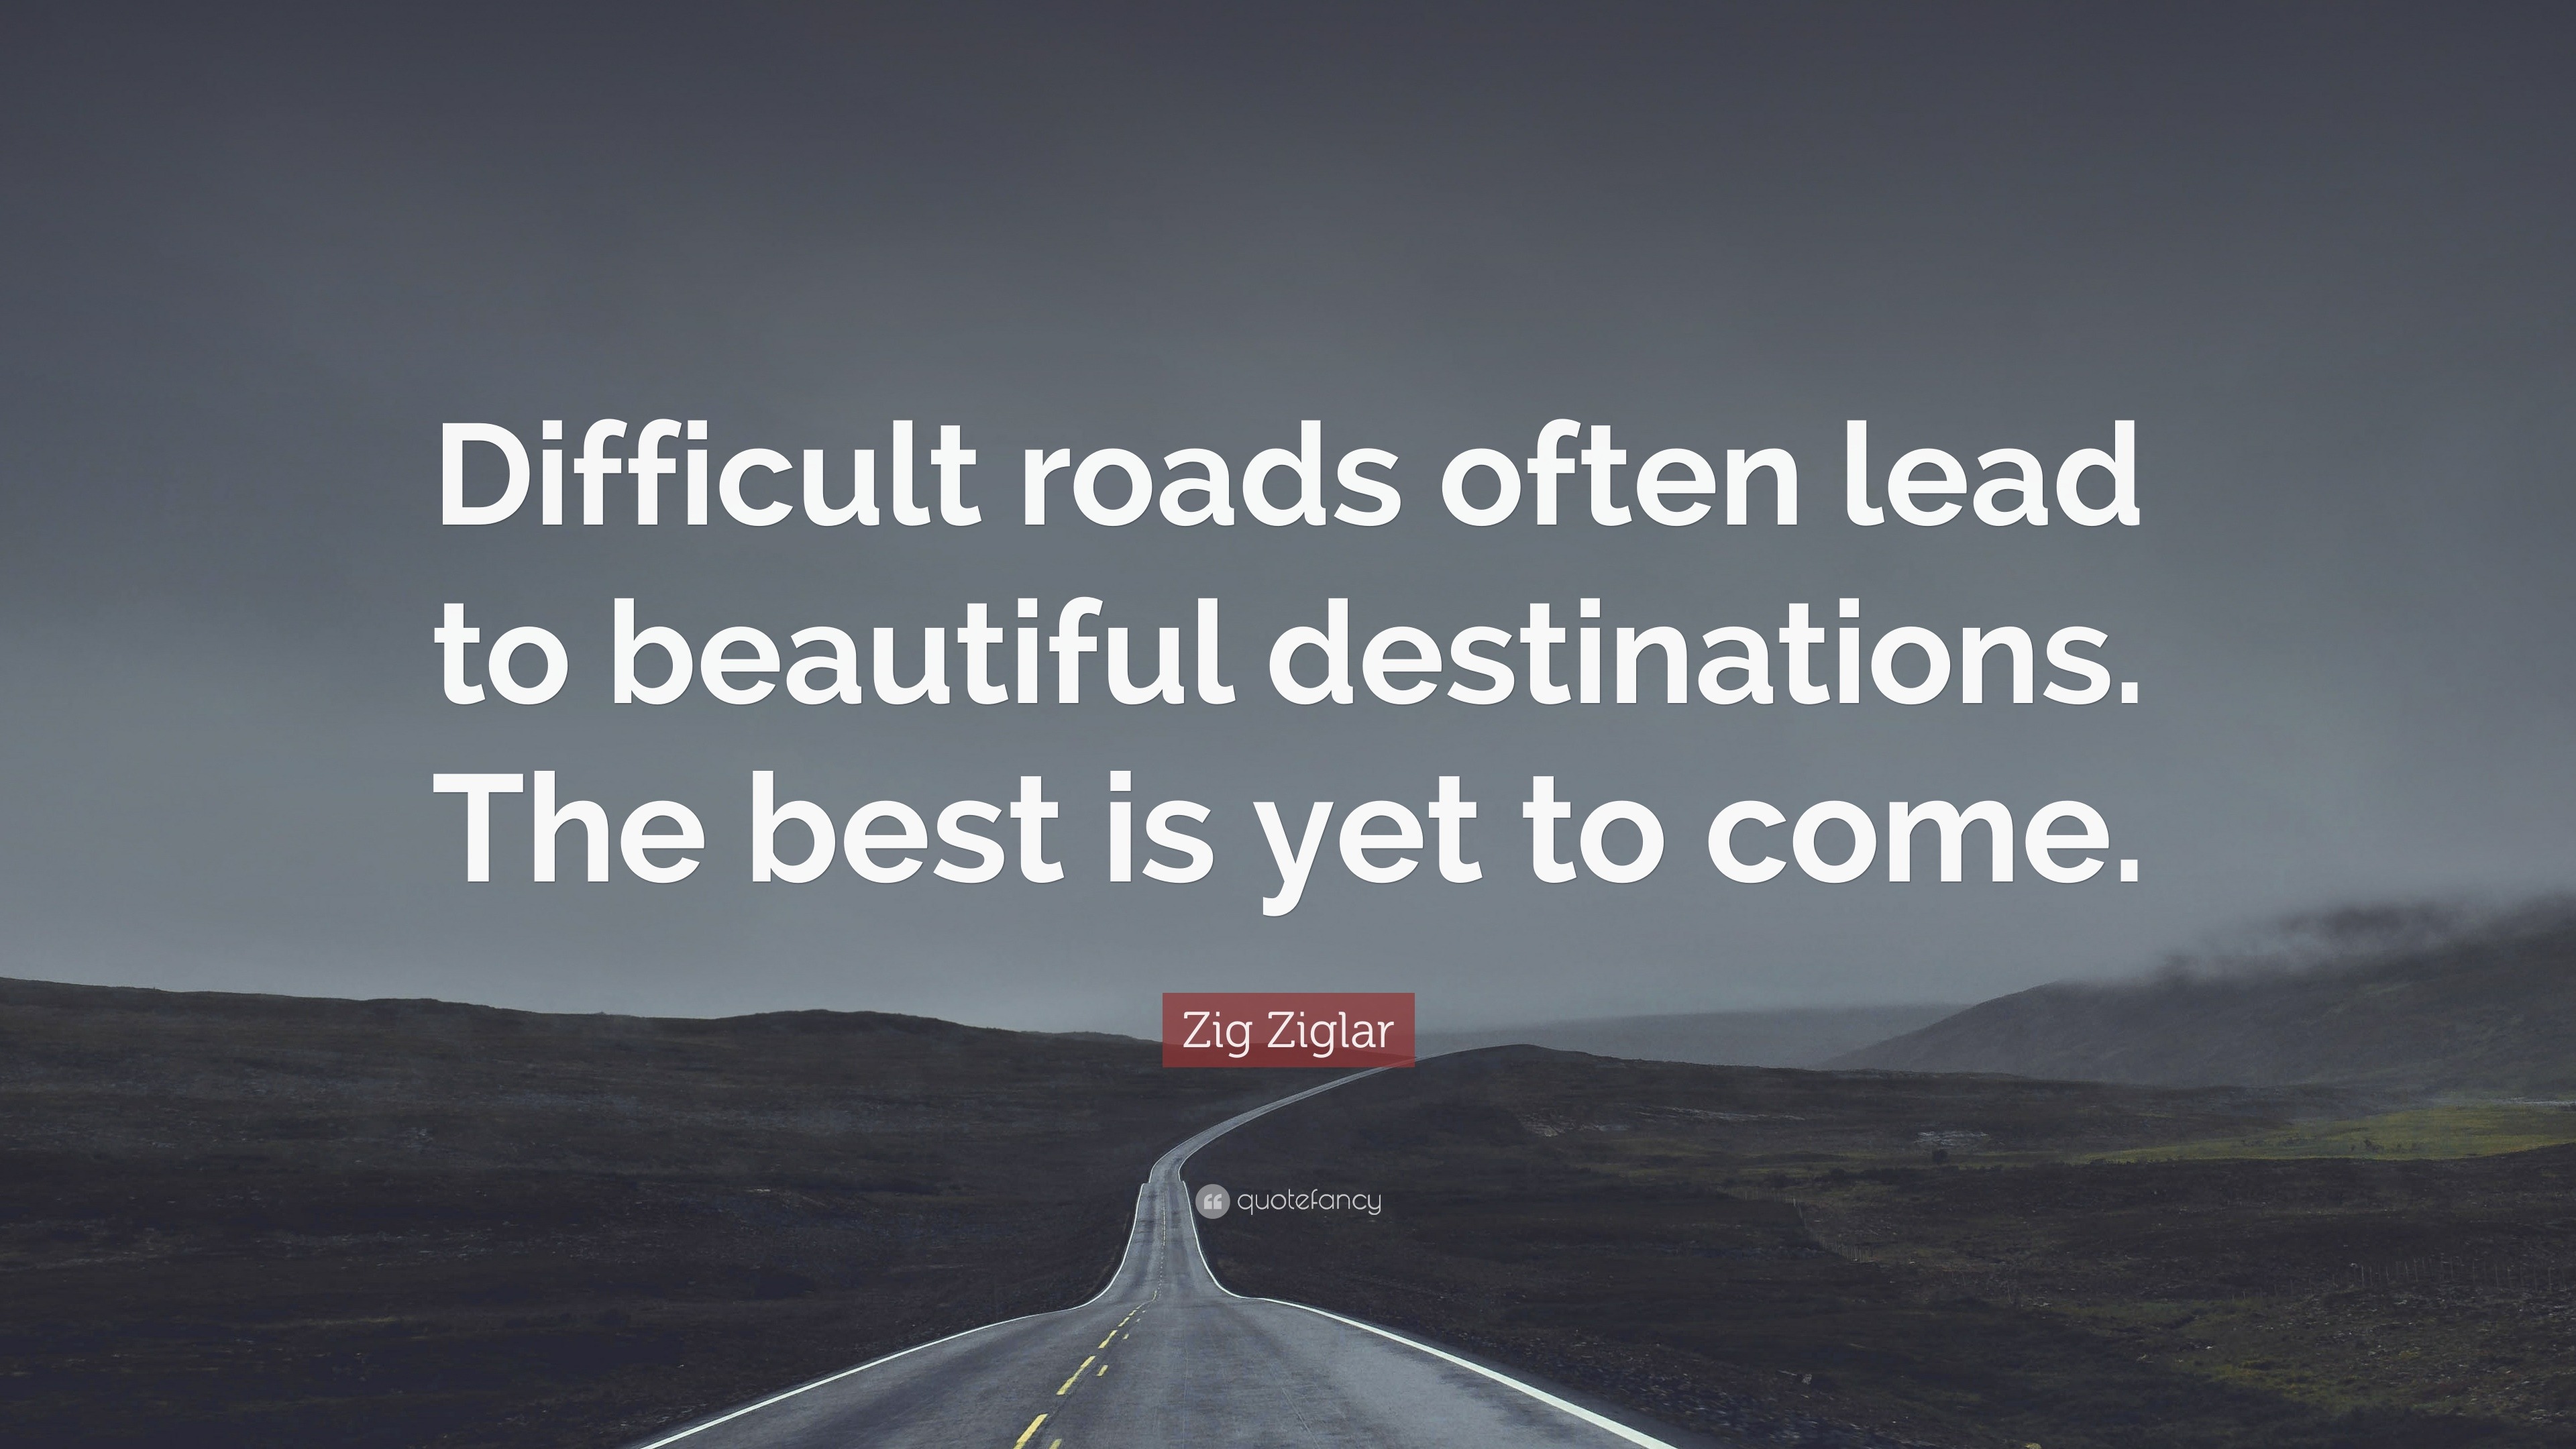 Zig Ziglar Quote: “Difficult roads often lead to beautiful destinations